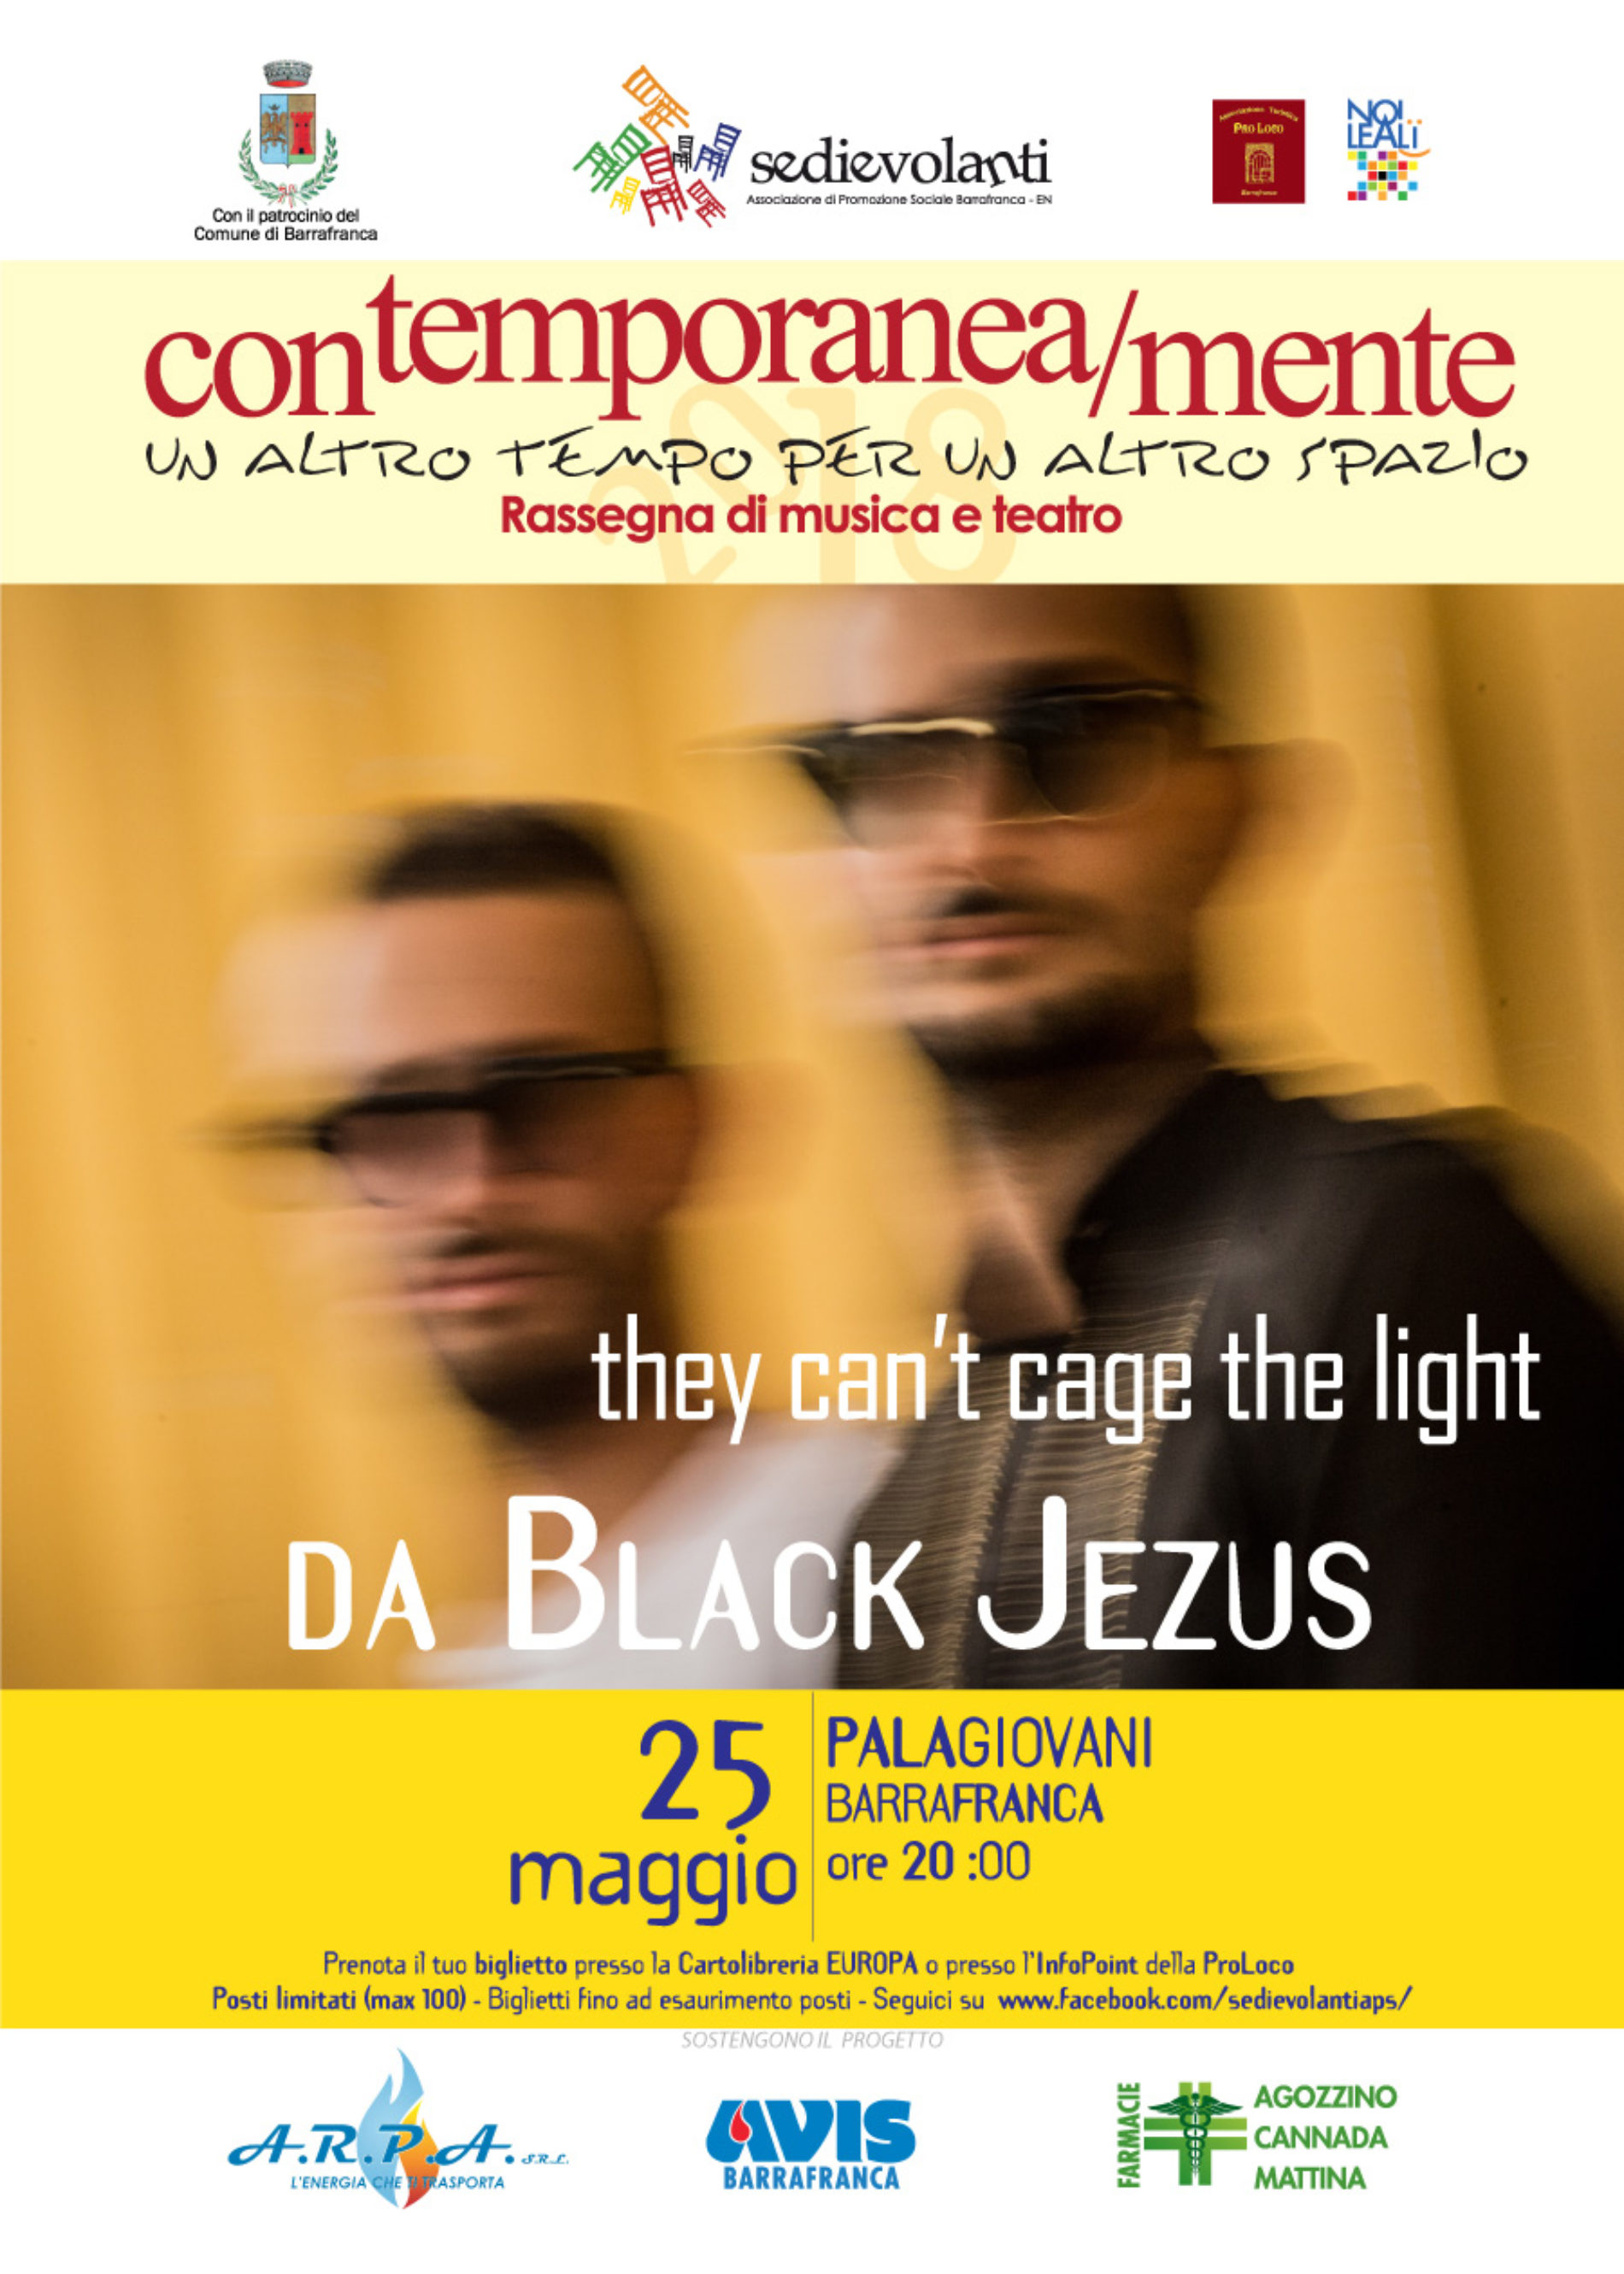 Barrafranca. La Rassegna “Contemporanea/mente 2018” passa alla sessione Little Stage con i Da Black Jezus